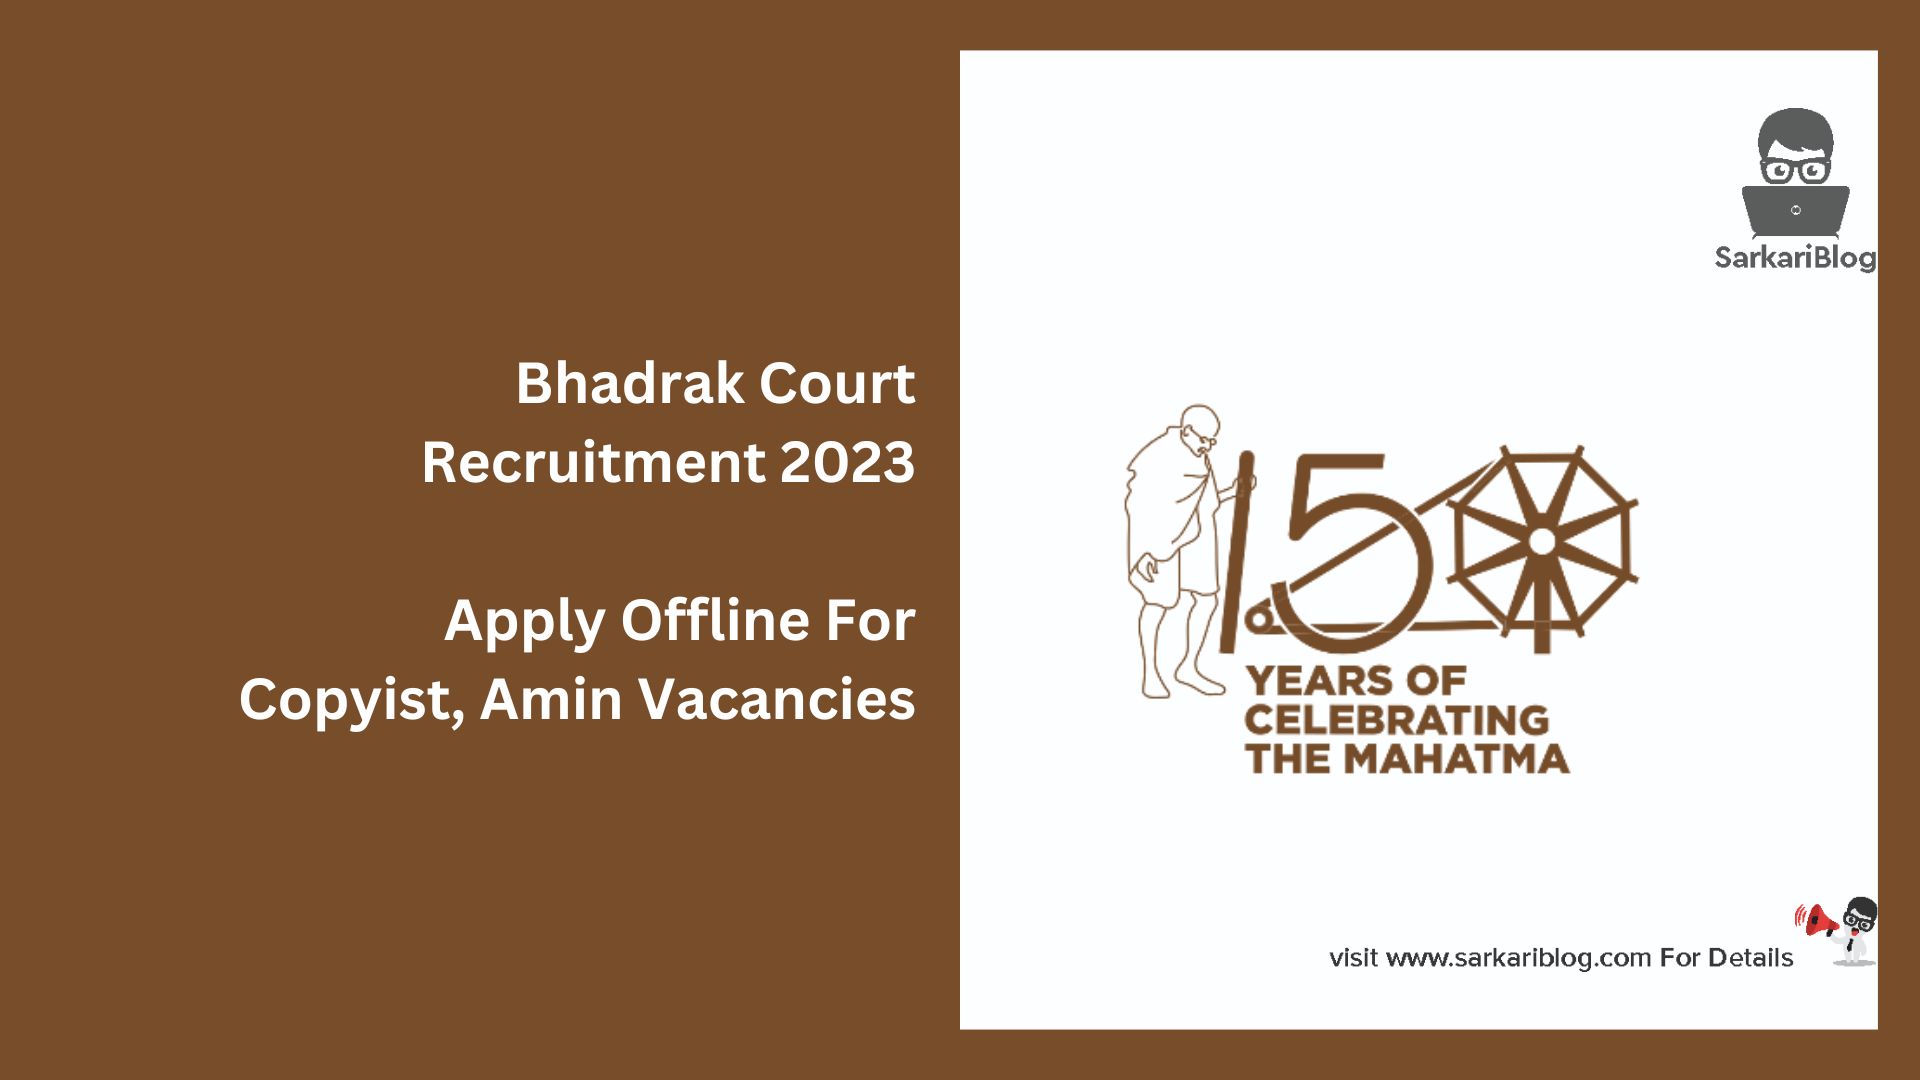 Bhadrak Court Recruitment 2023